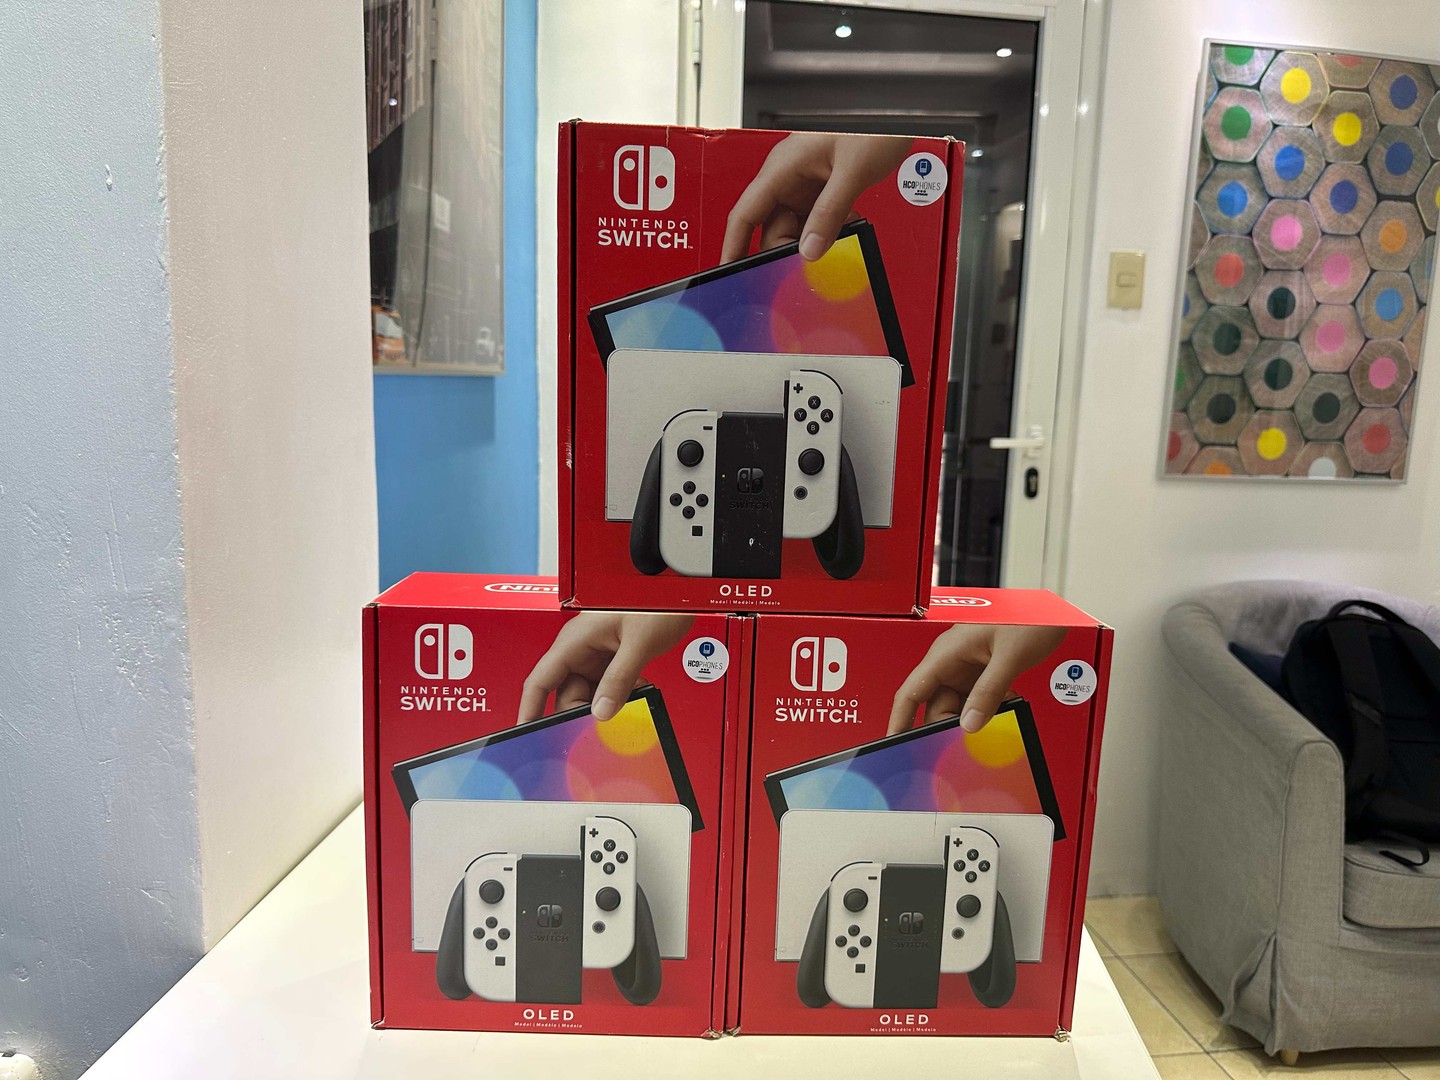 consolas y videojuegos - Nintendo Switch Oled Nuevos Sellados, Originales RD$ 19,200 NEG/ TIENDA